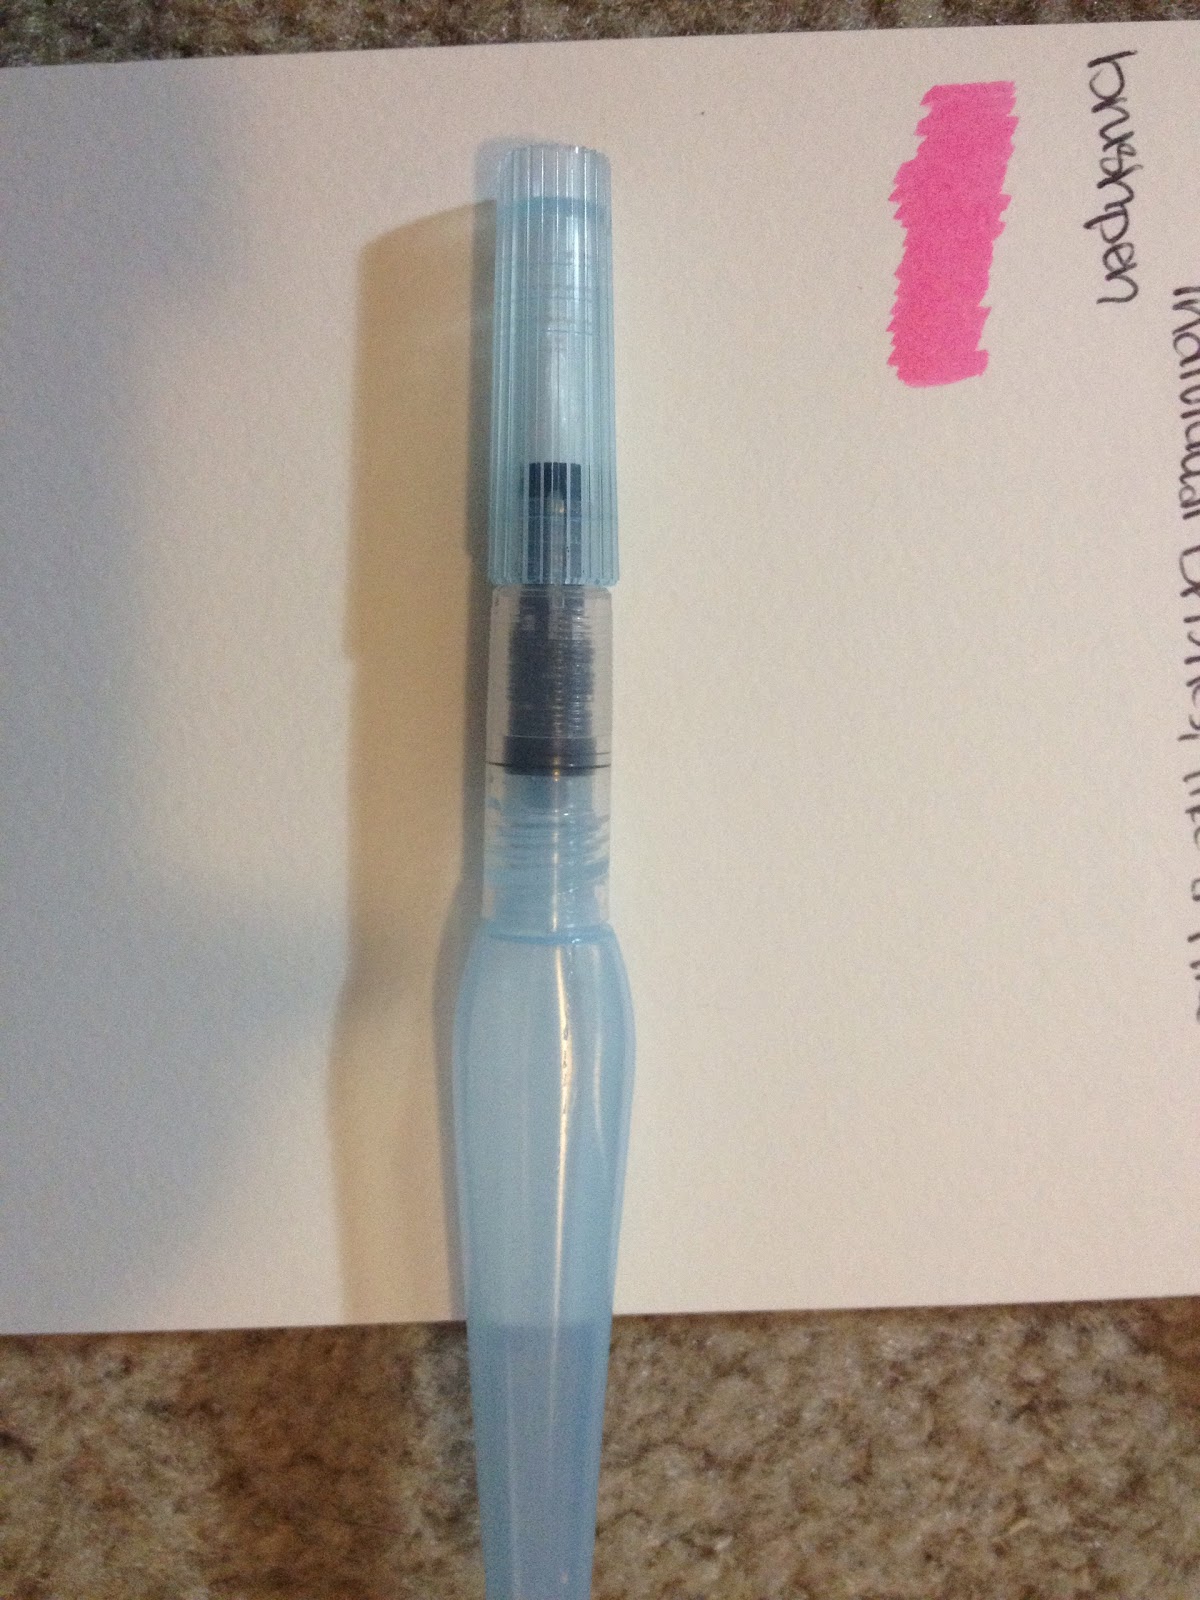 Art 101 3-Pack Watercolor Brush Pens